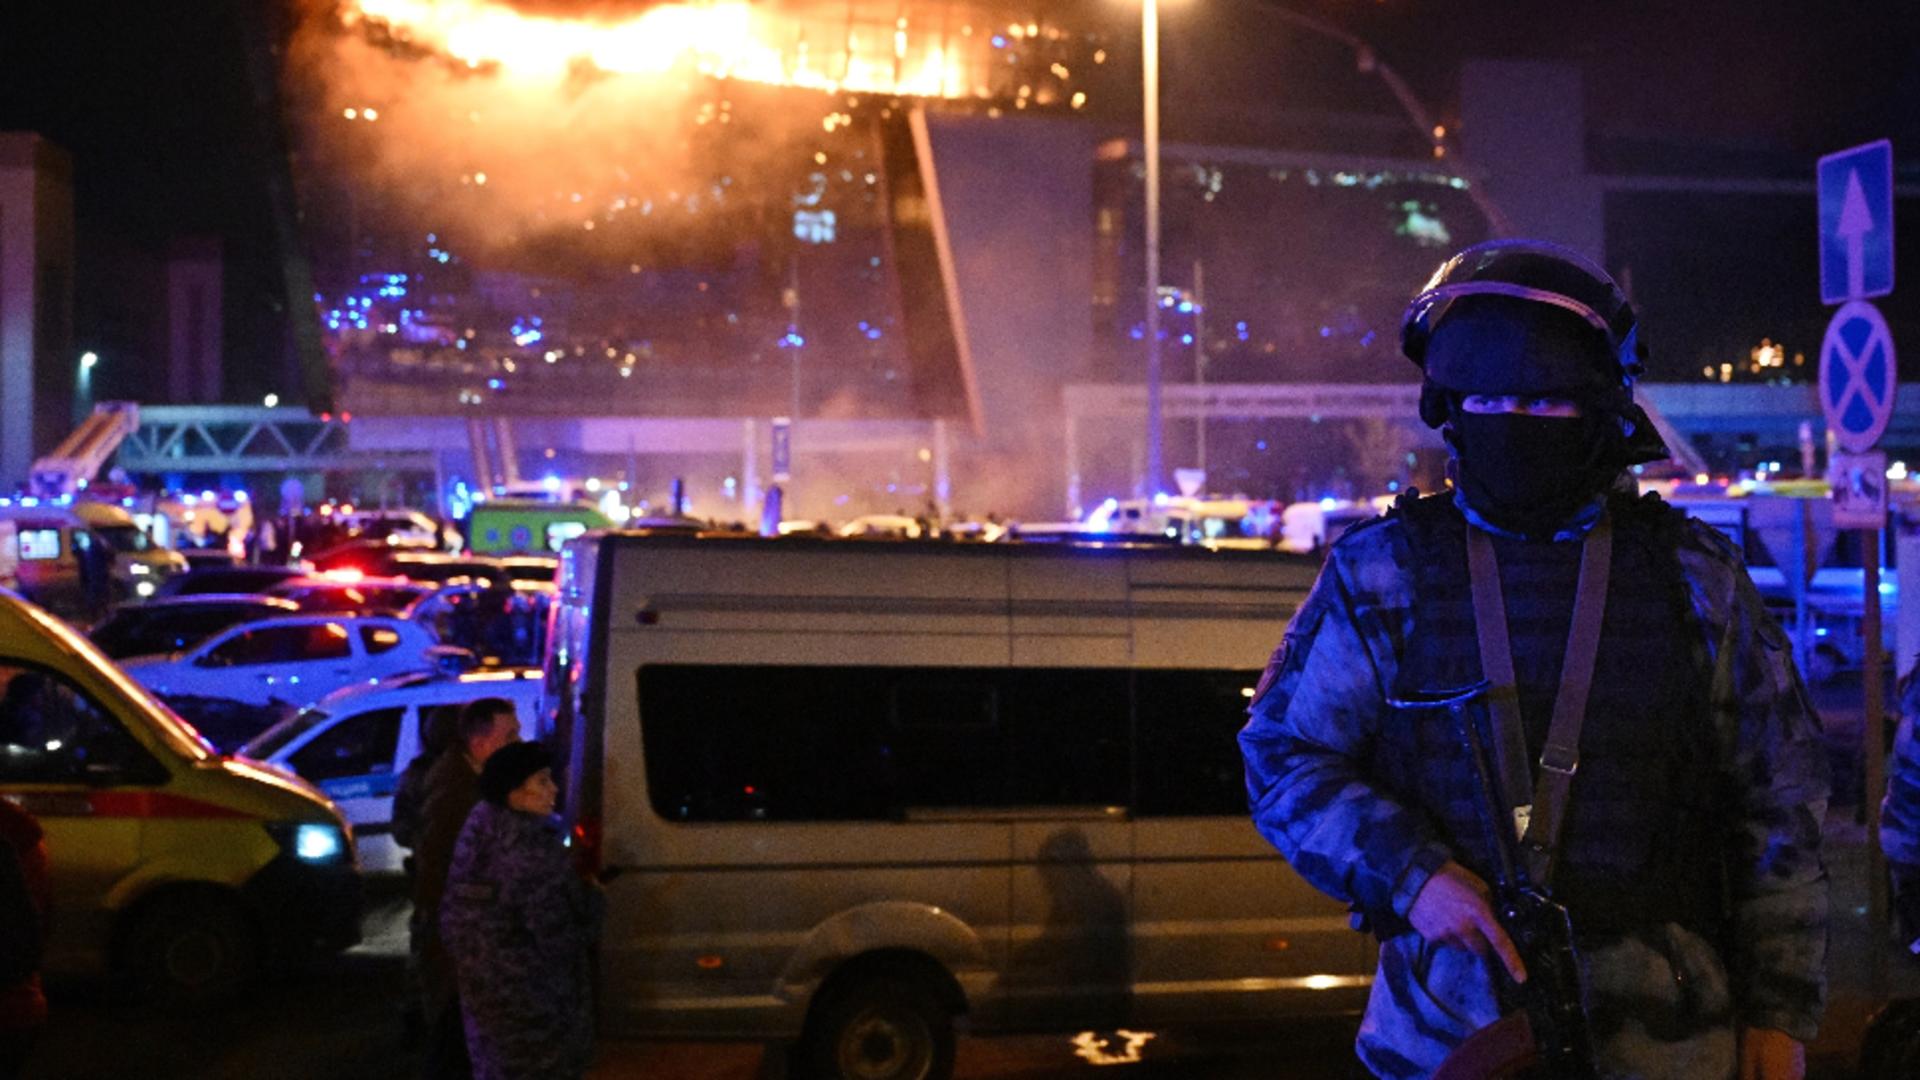 Criză la Moscova, după masacrul de la mall. Mărturiile șocante ale teroriștilor la interogatoriu – furie la Kremlin